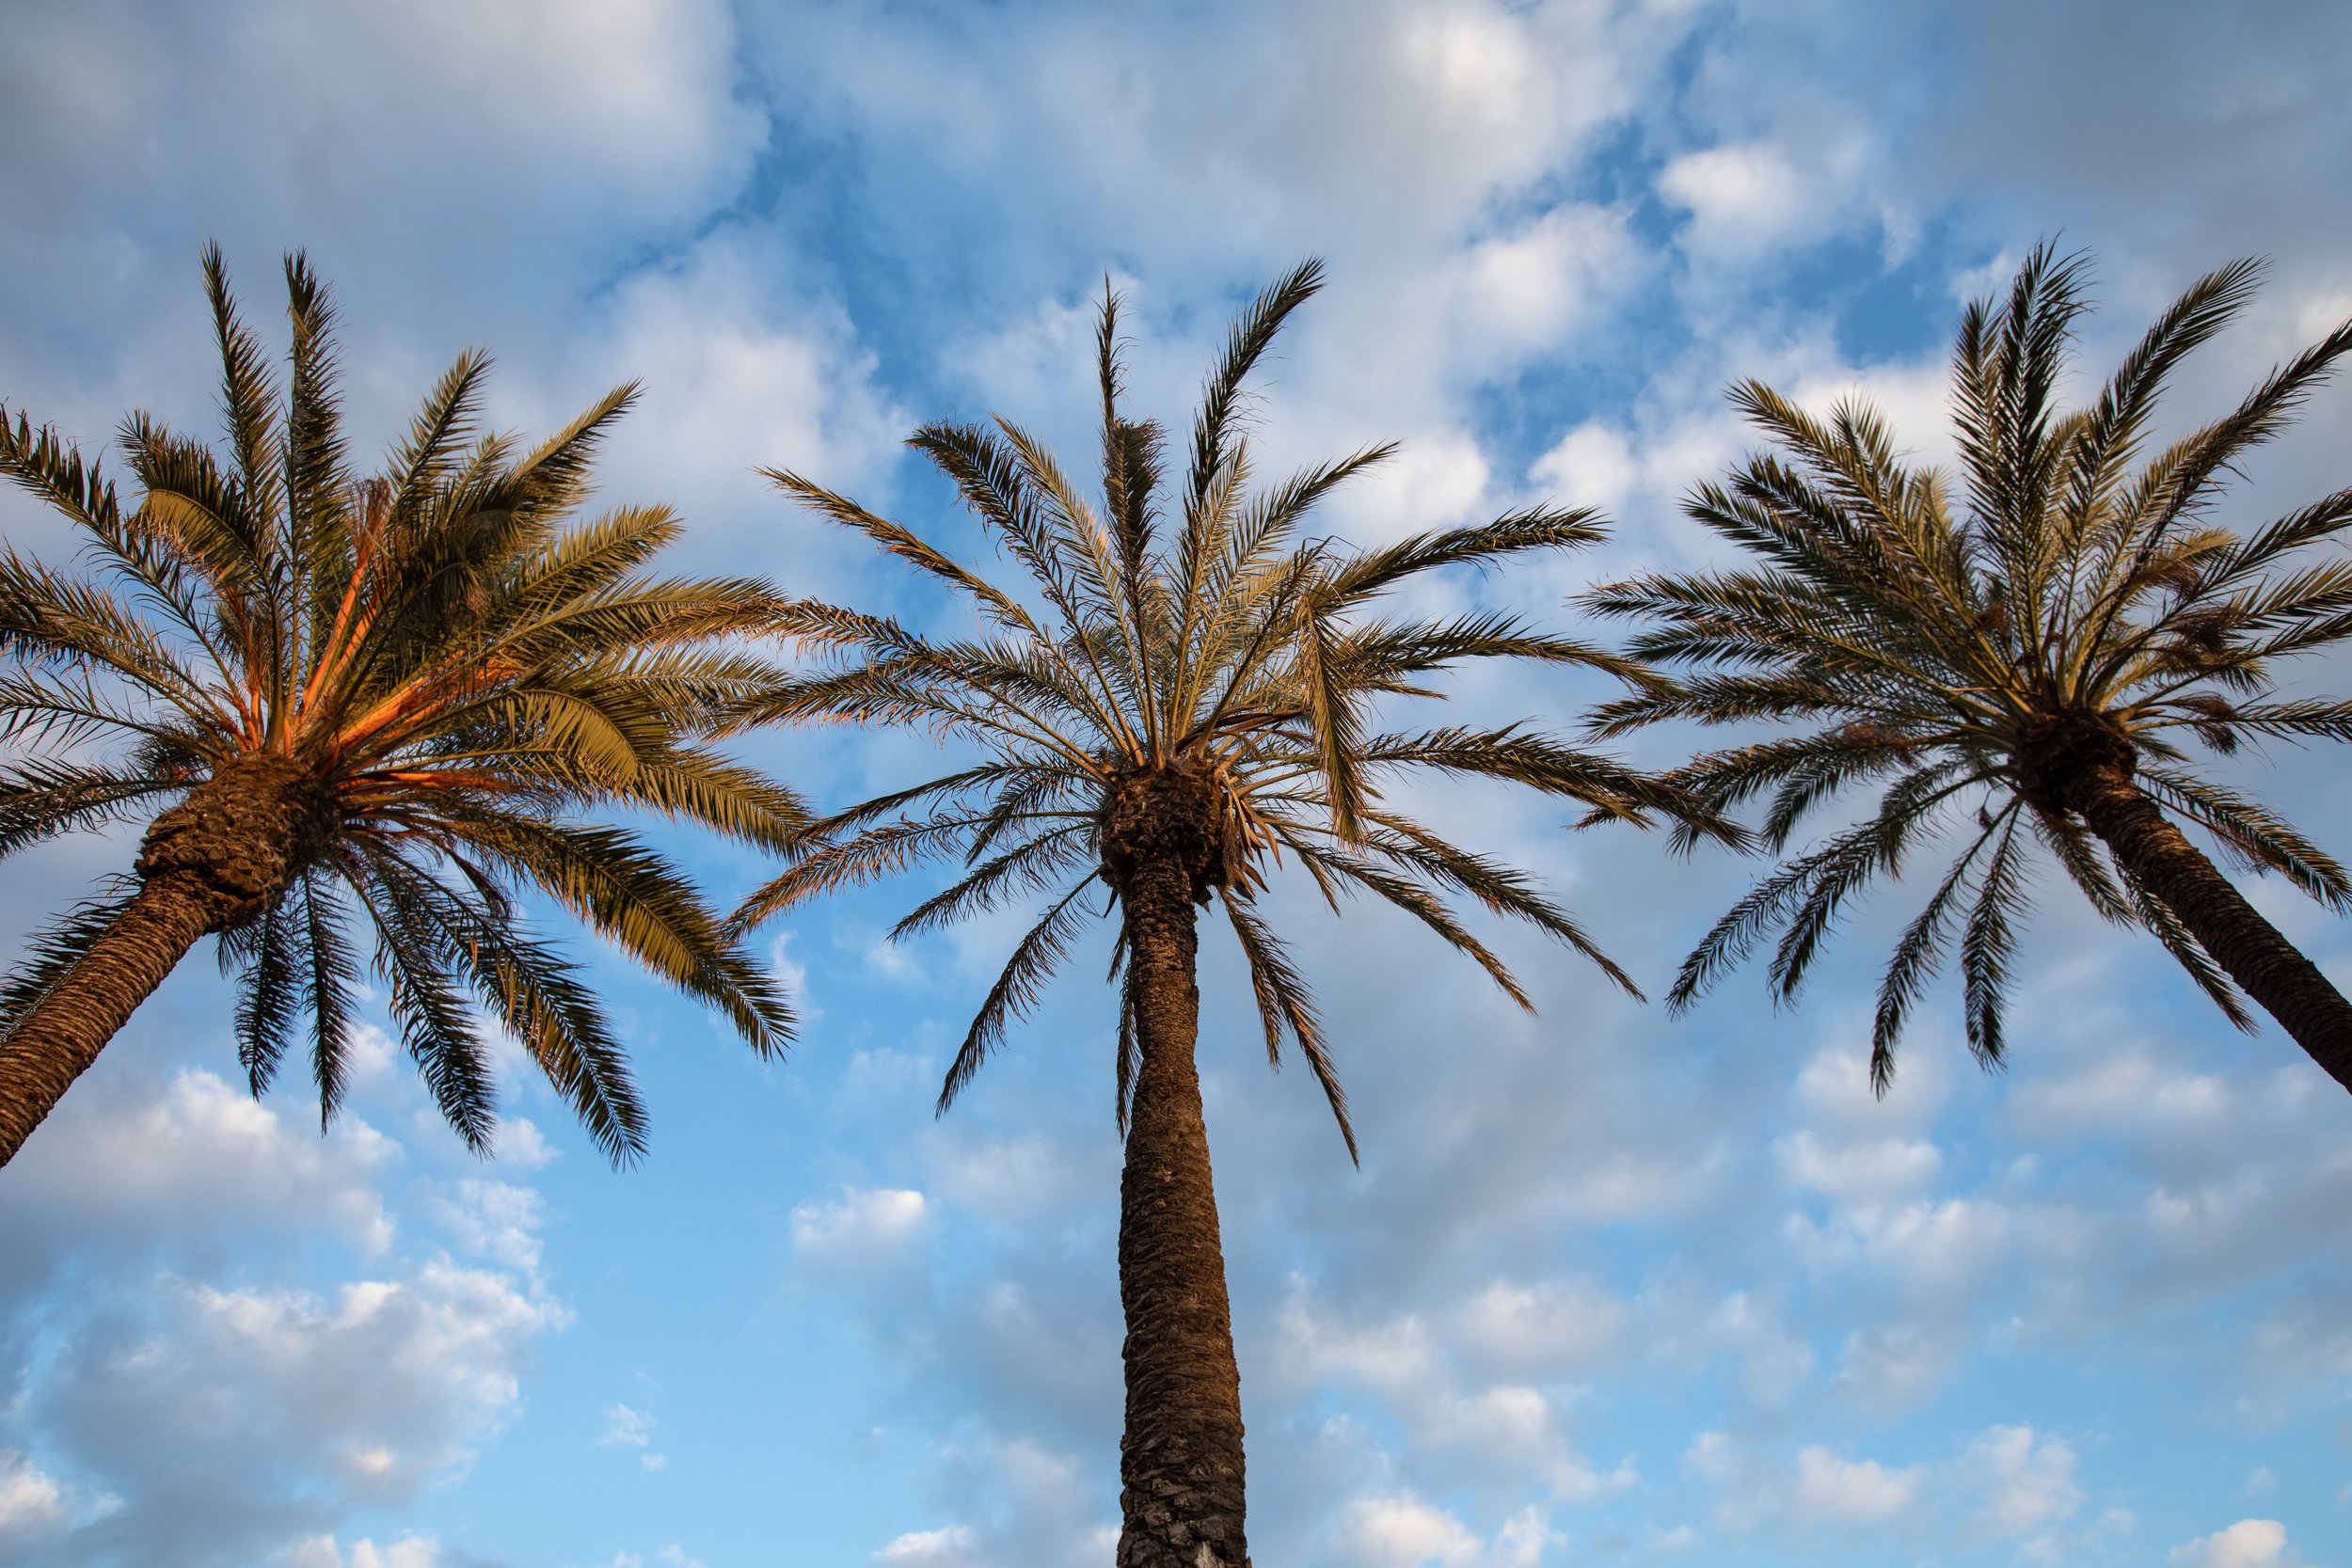 Mil Palmeras, a thousand palm trees, a beach town in Spain